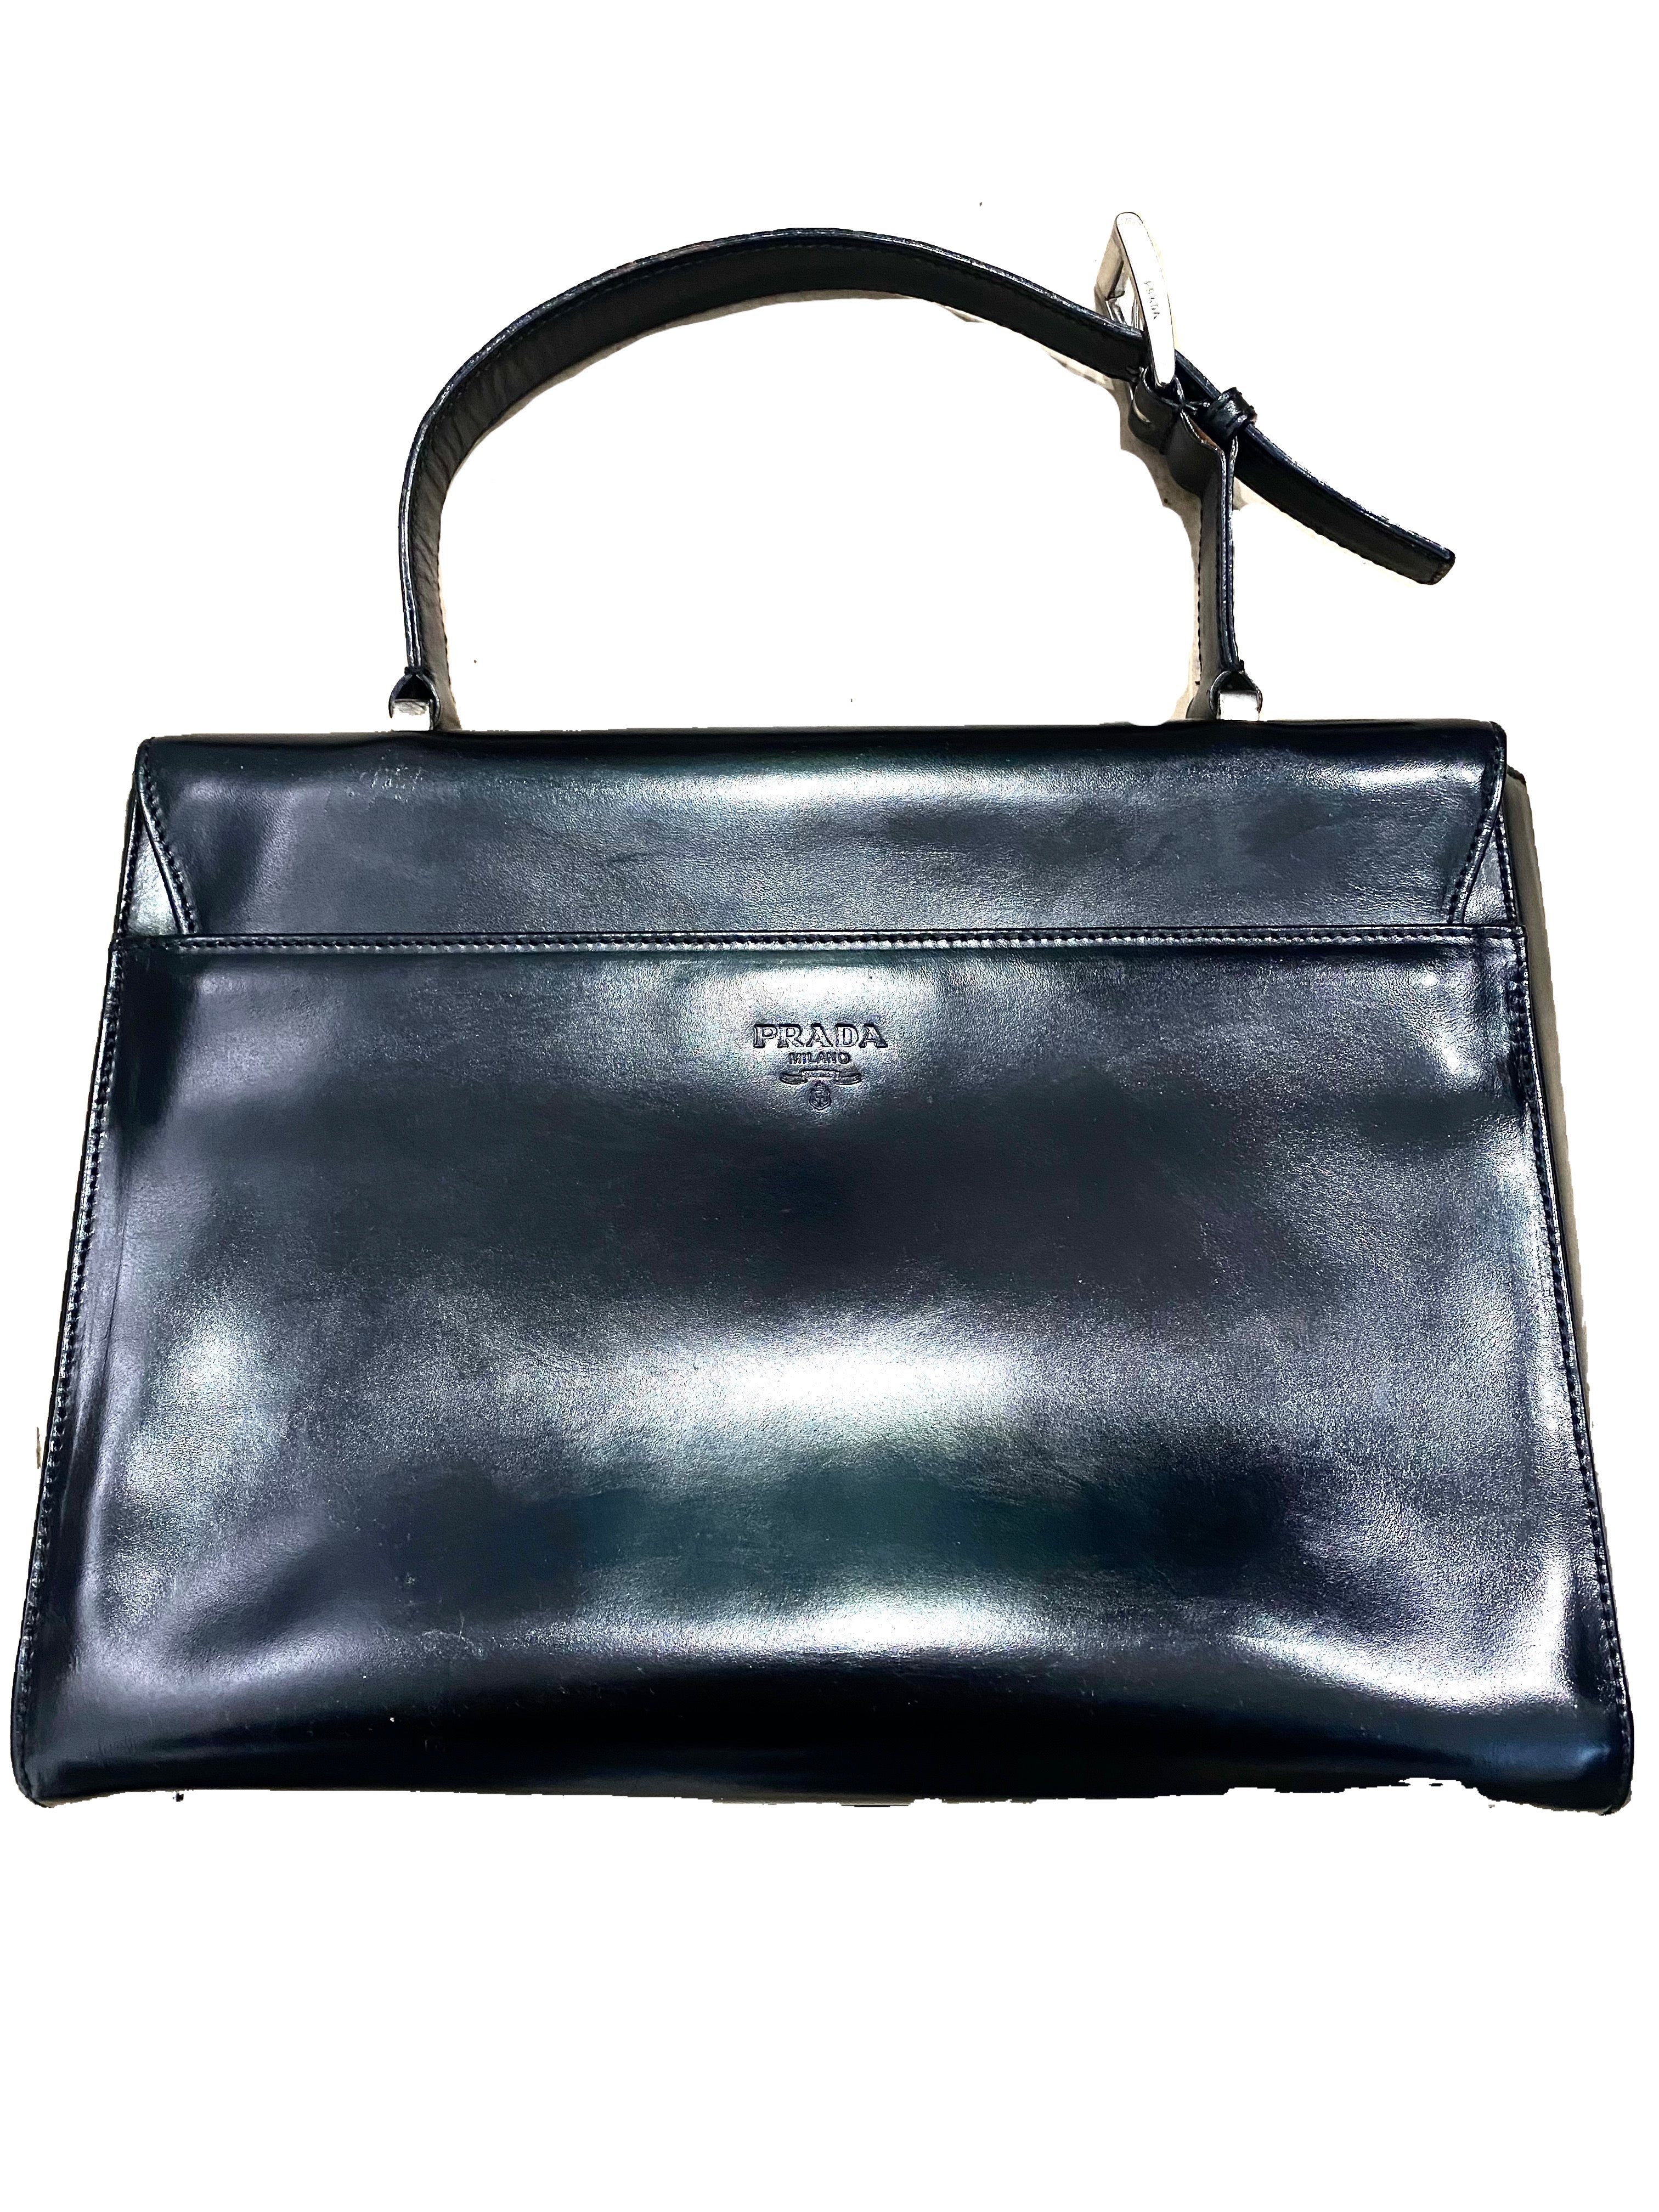 Buy Da Milano Black Leather Tote Bag online